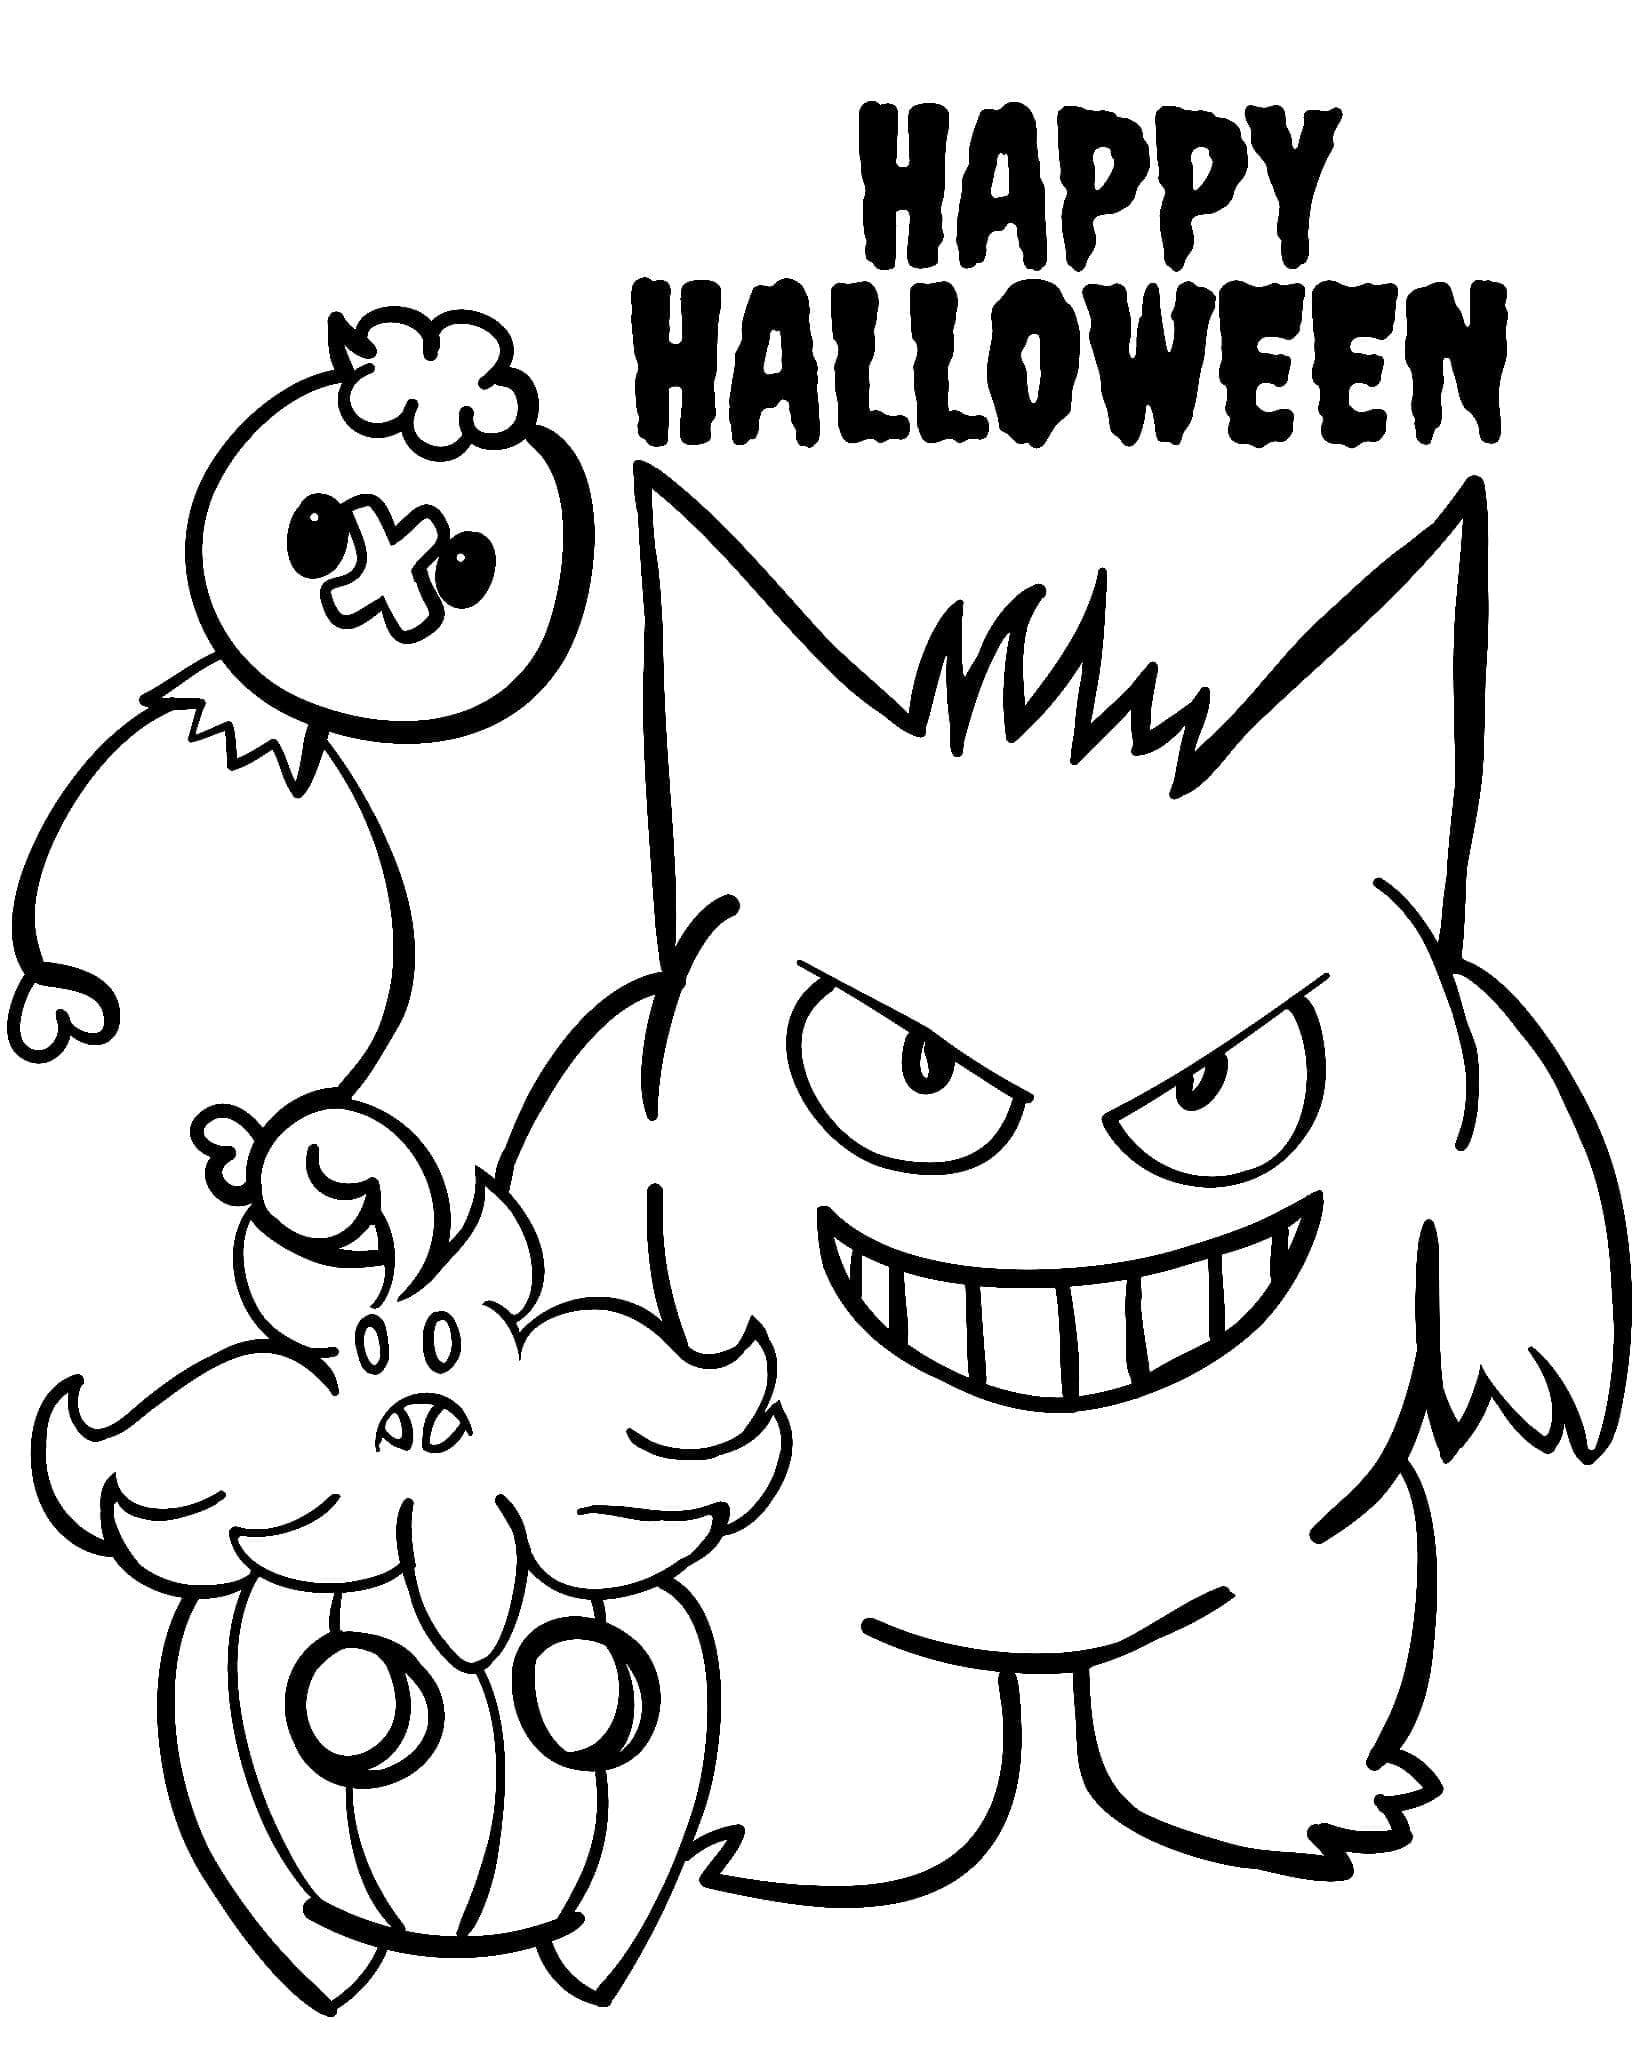 Pokémon d’Halloween Pour Enfants coloring page